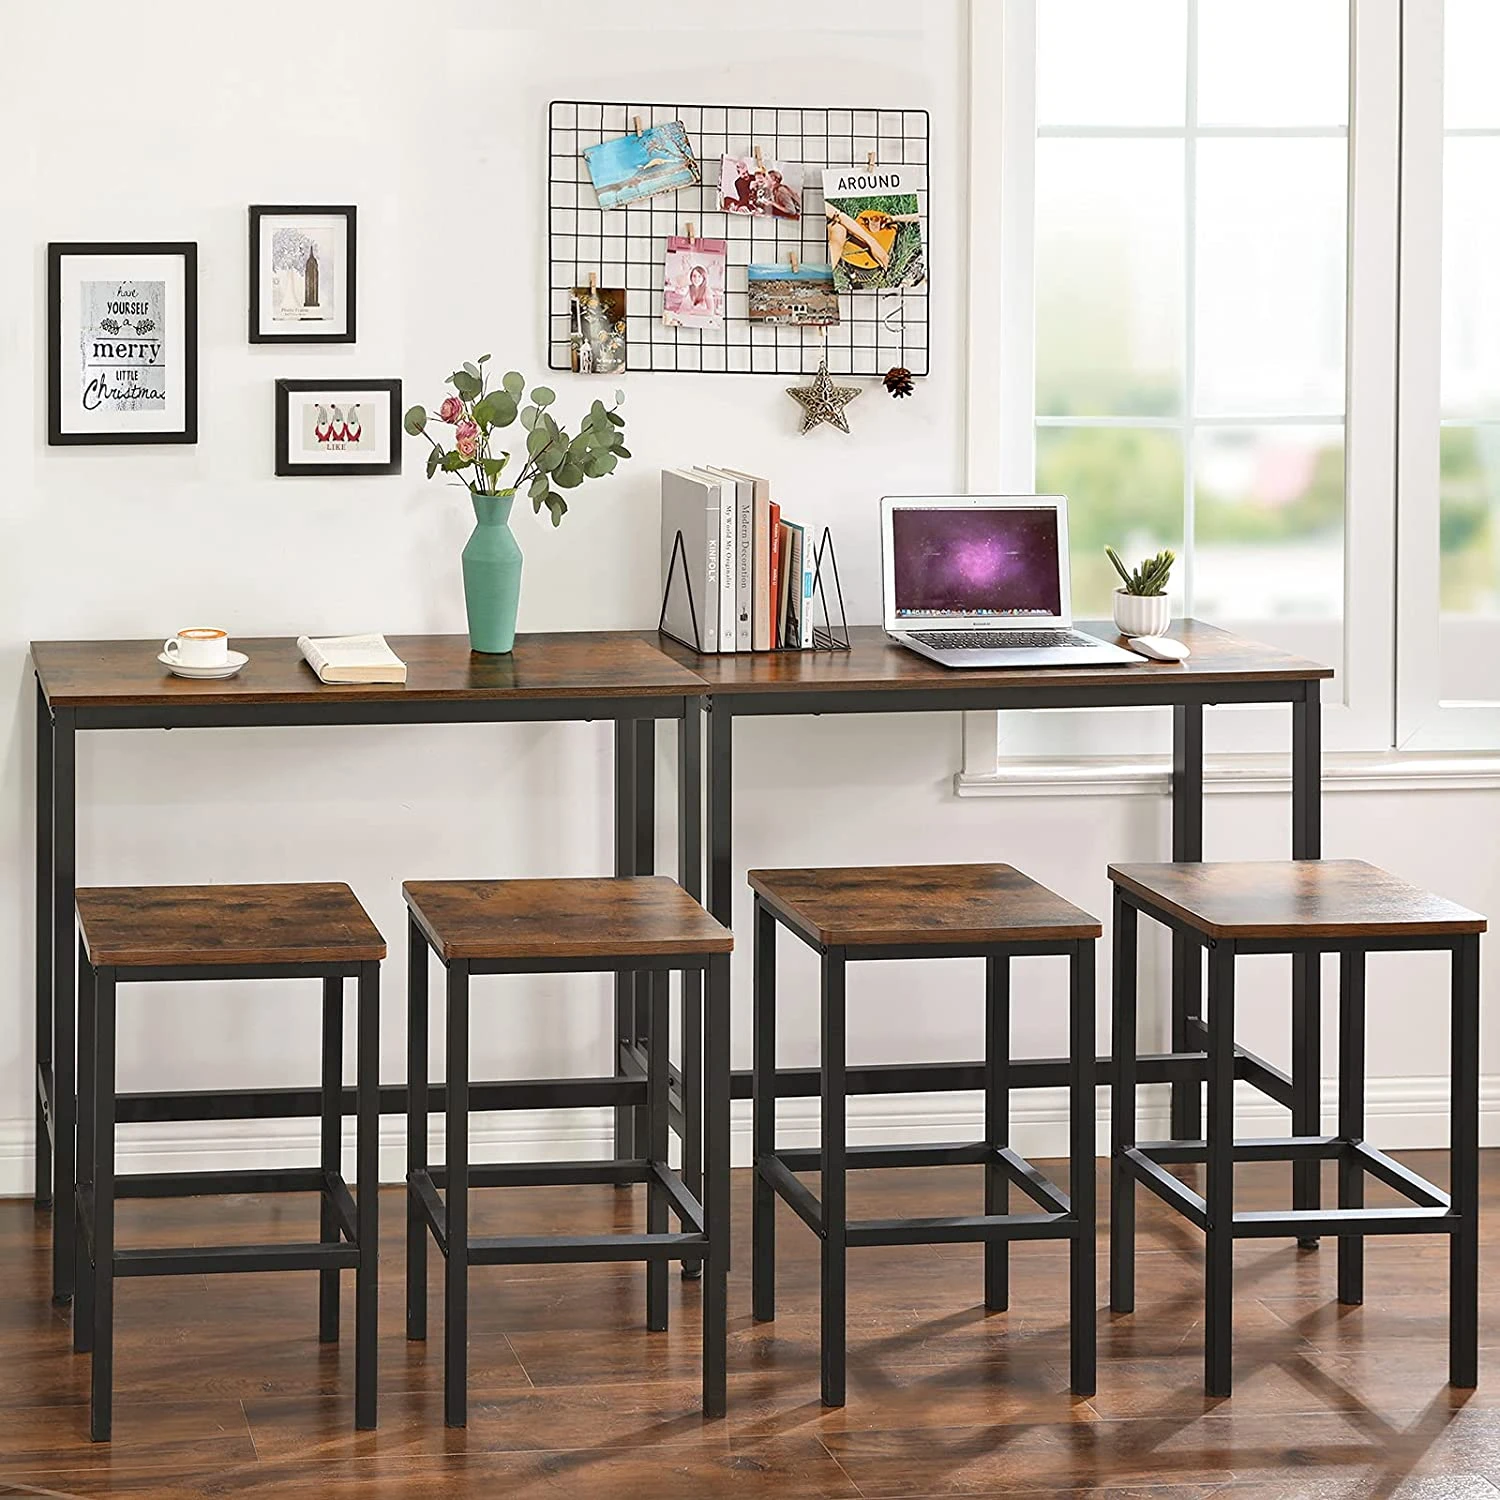 LBT10X keukentafel, aanrecht, rechthoekige statafel, stevig metalen frame, 100 x 40 x 90 cm, eenvoudige montage, smal industrieel ontwerp, vintage bruin / zwart - SimpleDeal.nl